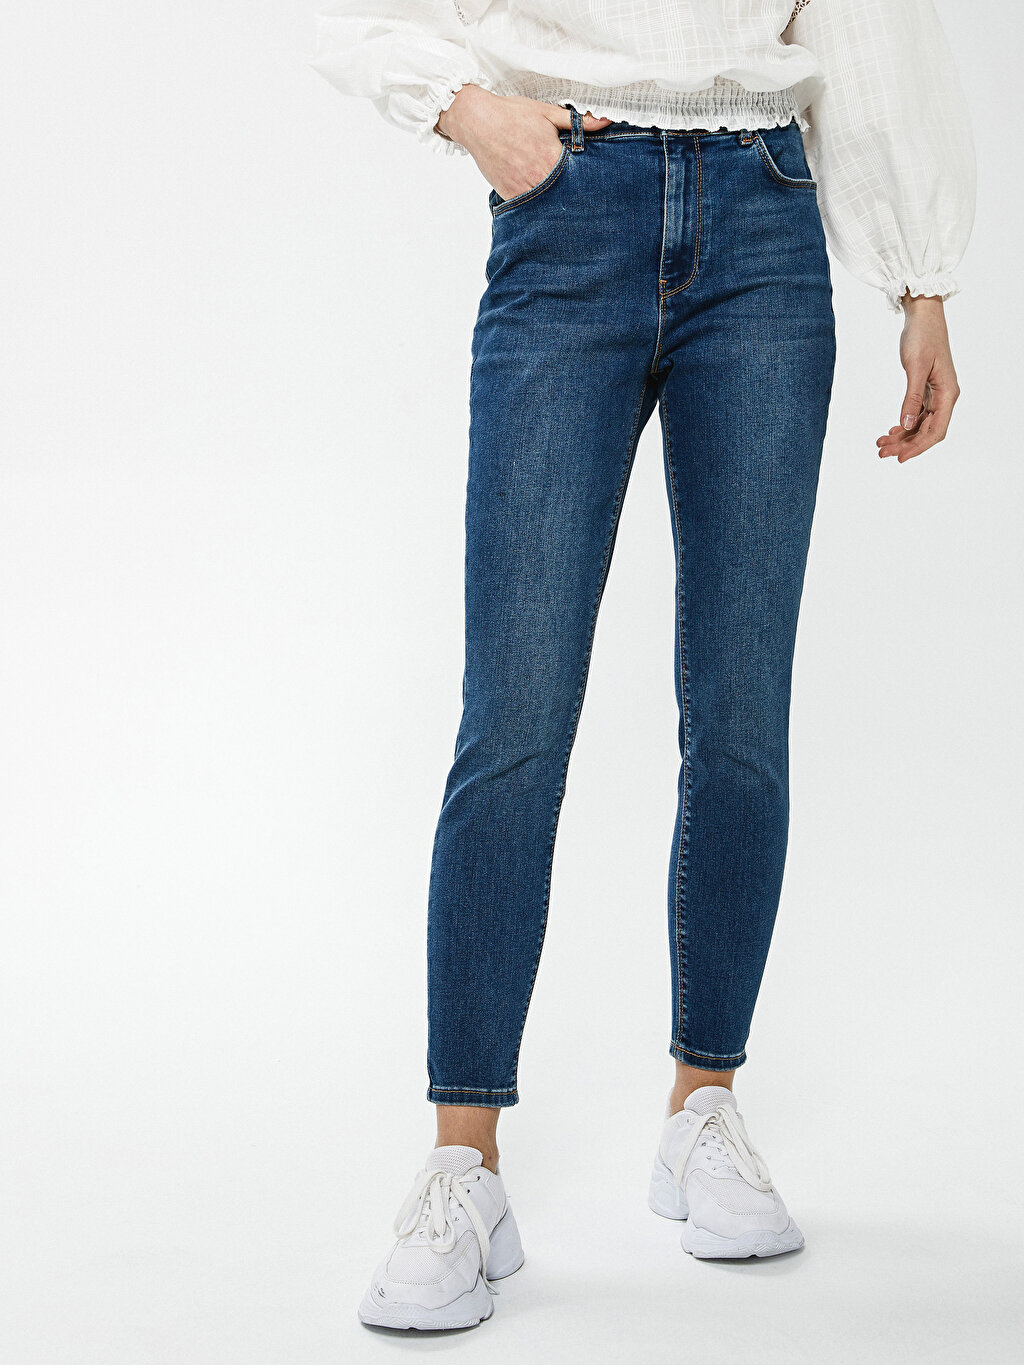 Прямые женские джинсы с высокой посадкой фото